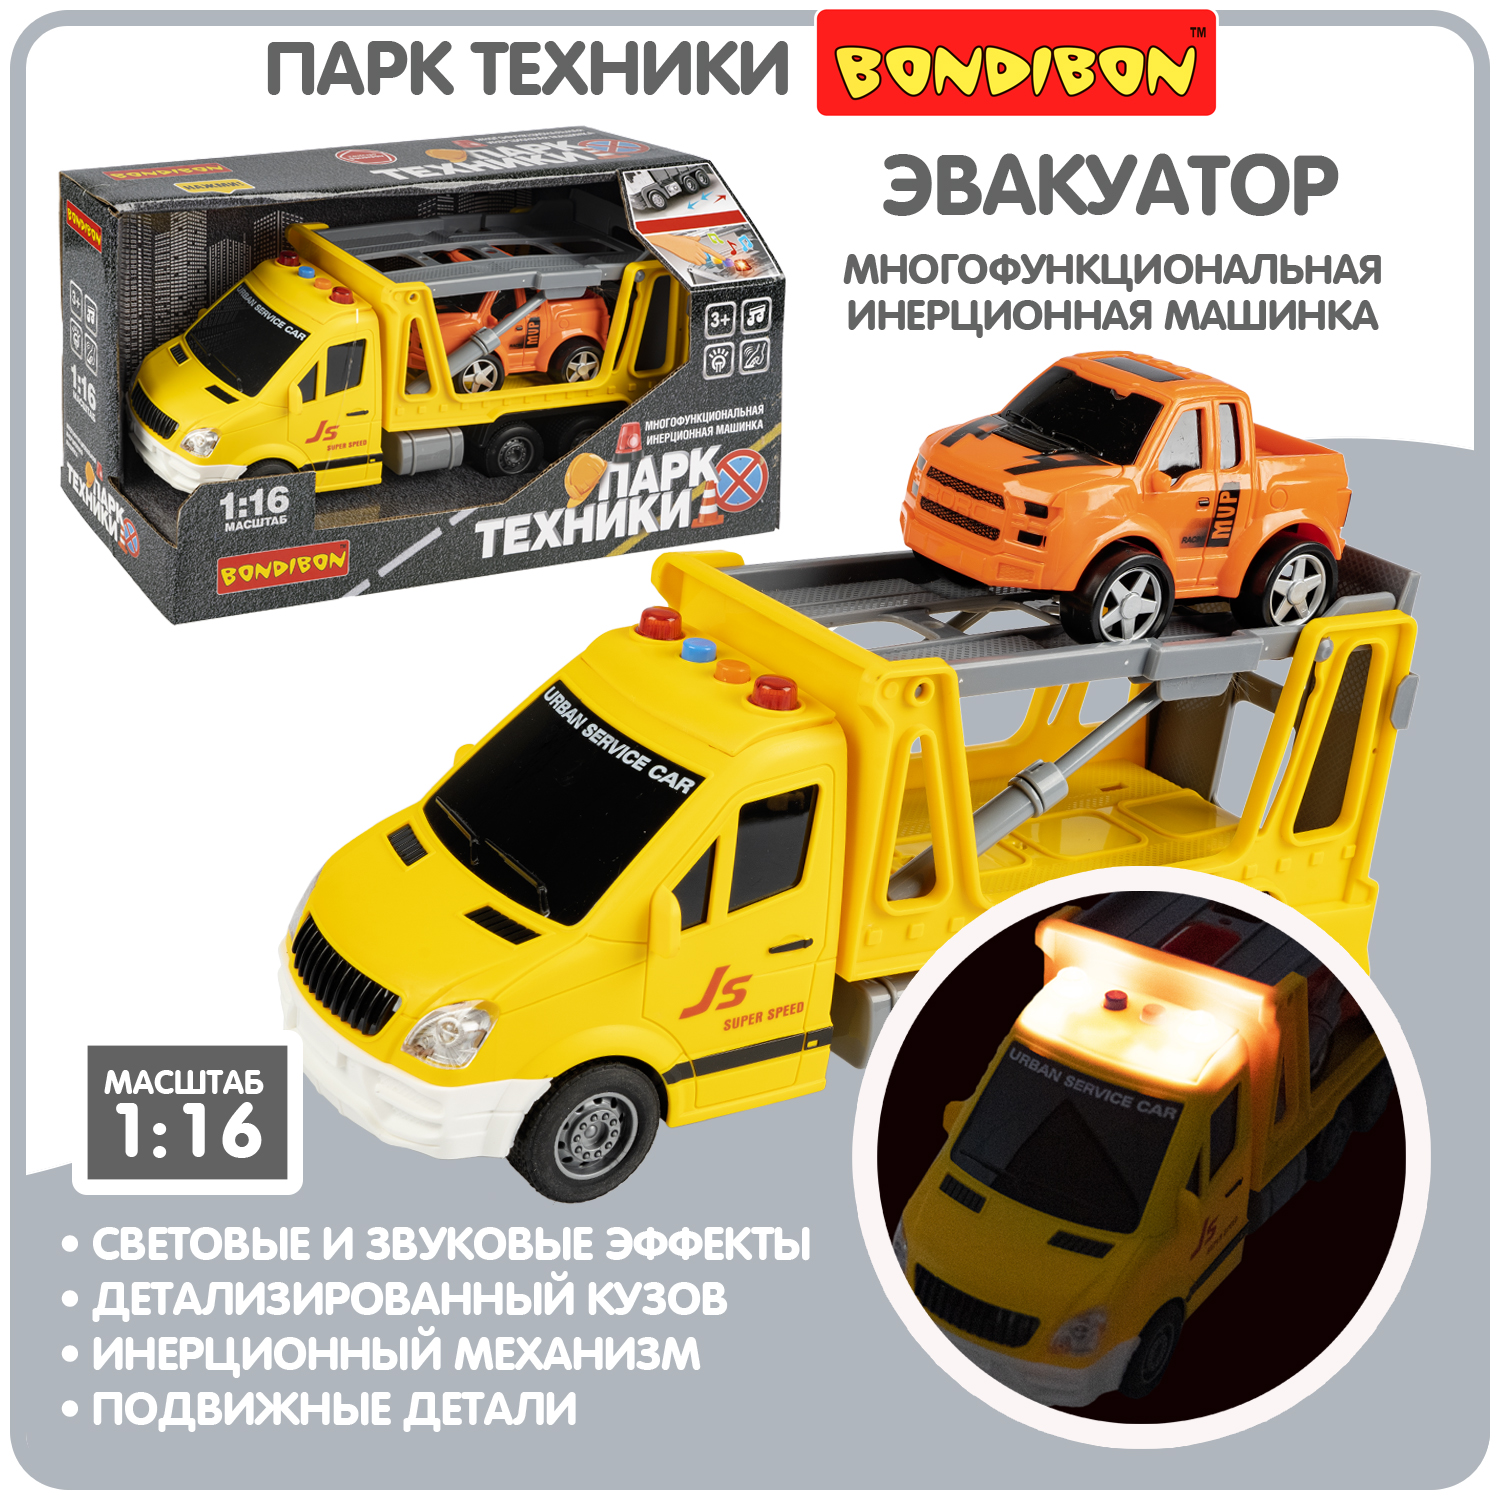 Многофункциональная инерционная машинка Bondibon «ПАРК ТЕХНИКИ», желтый эвакуатор, BOX